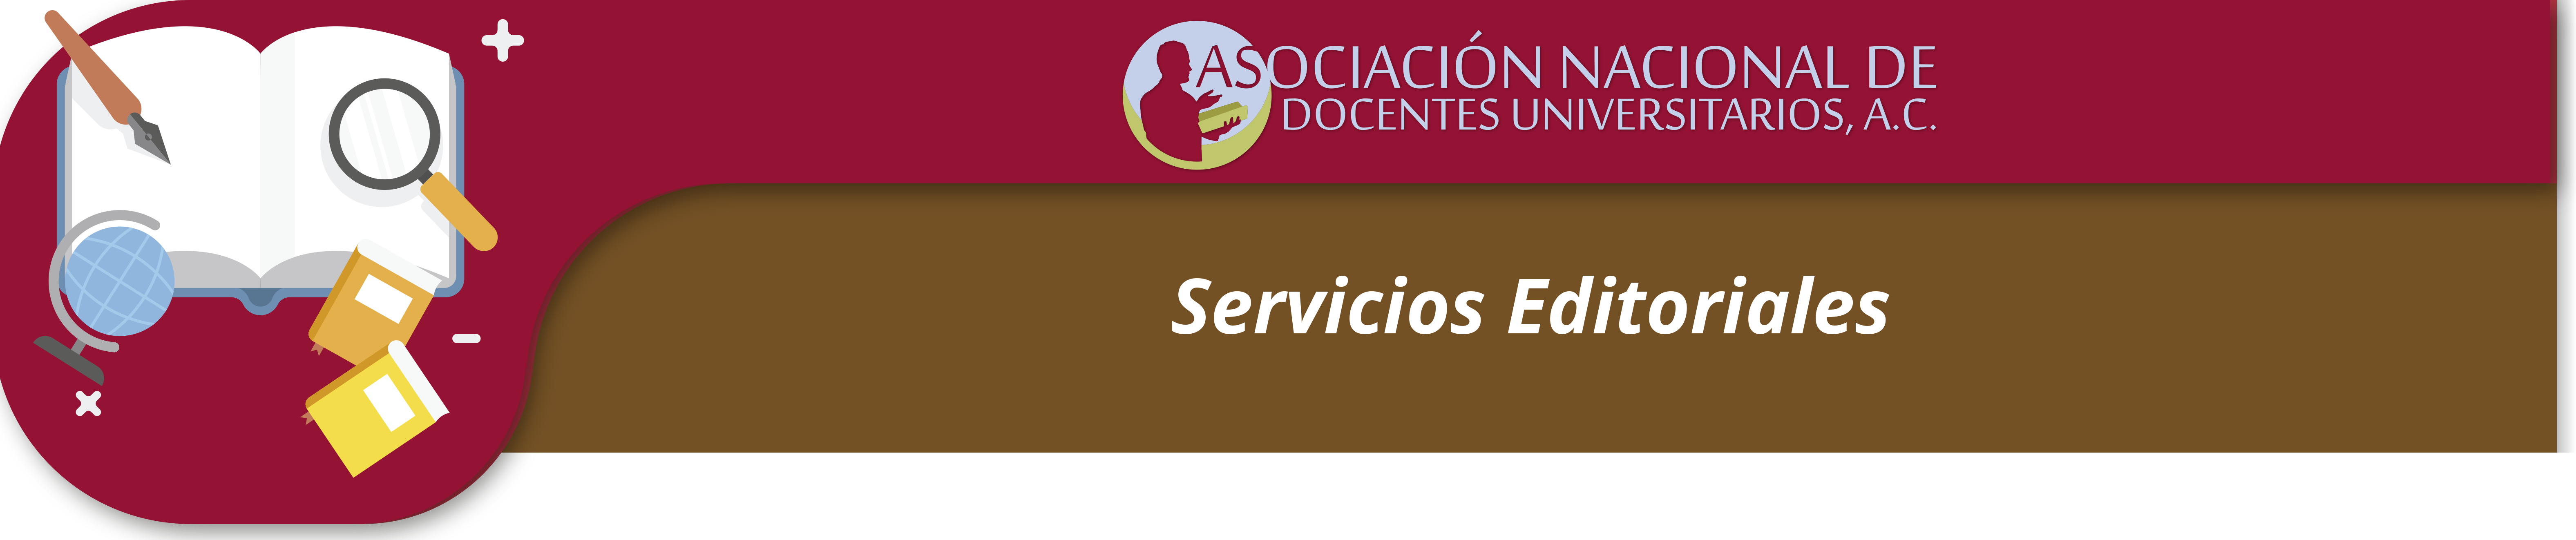 servicios_editoriales.png